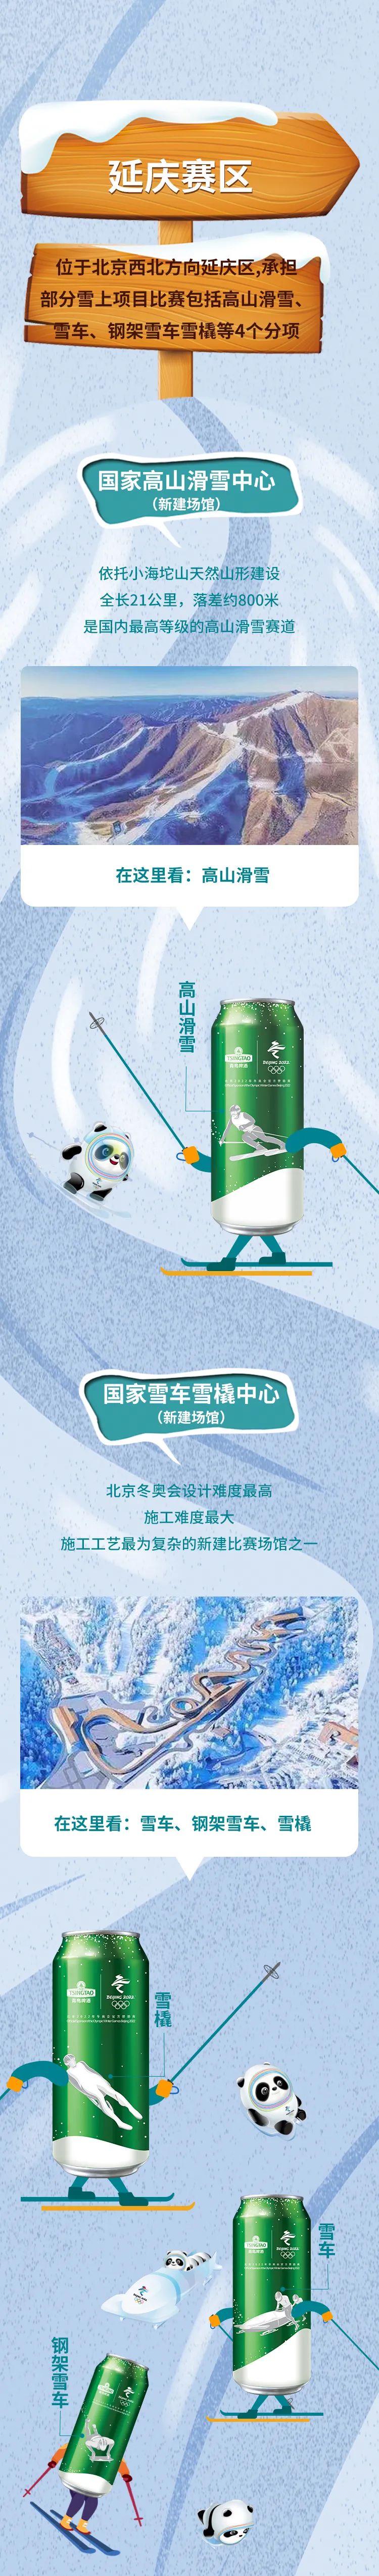 青岛啤酒推出“东奥冰雪罐”，将15个官方竞技项目巧妙呈现于罐身